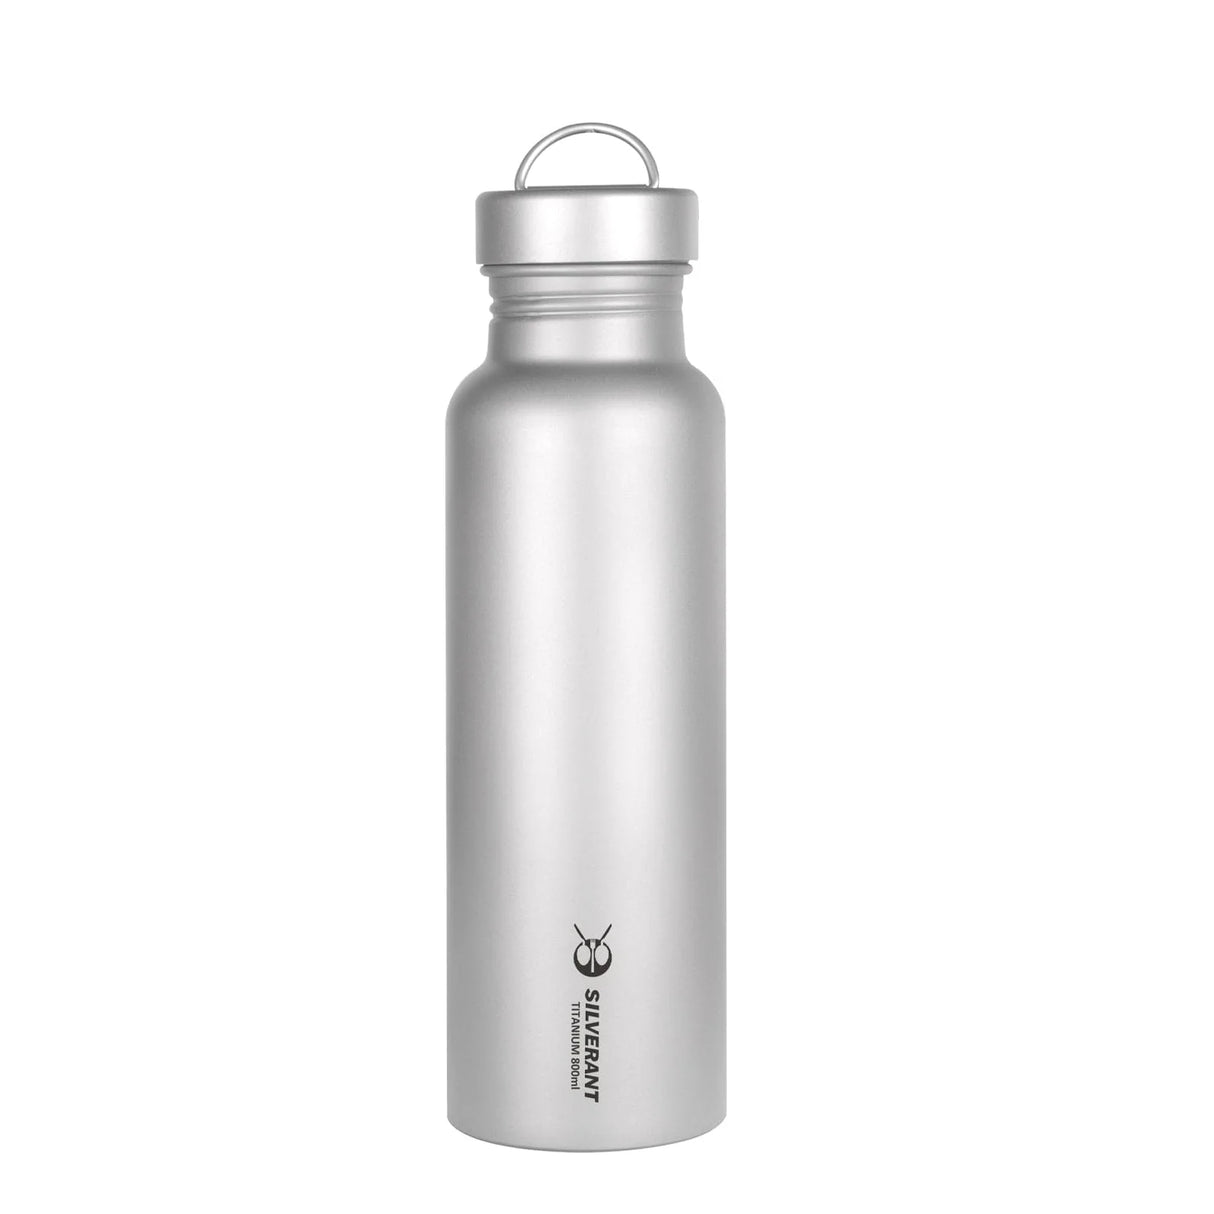 Titanium Water Bottle - Round